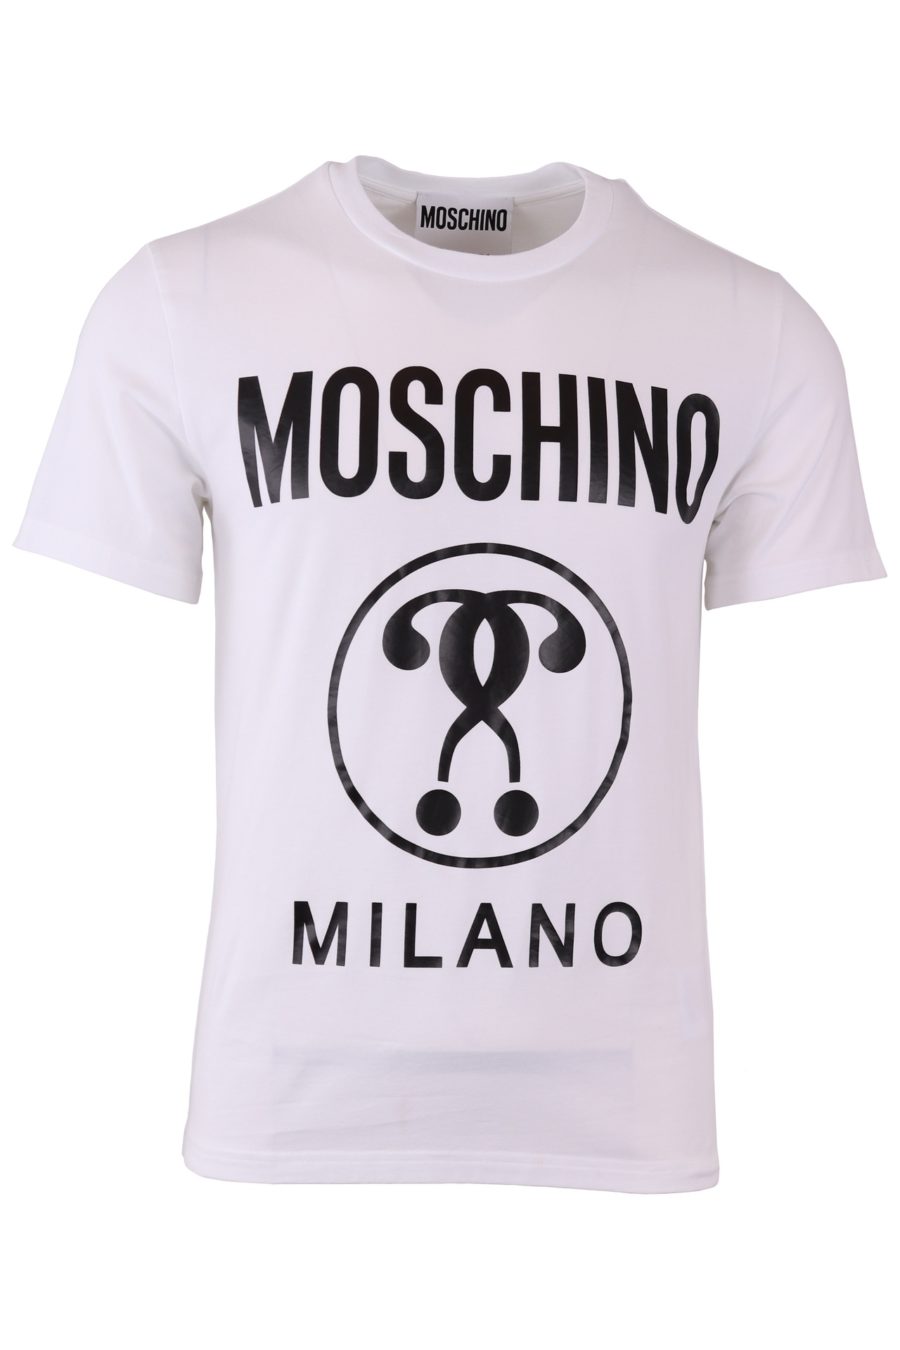 Moschino Couture weißes T-Shirt mit Logo und doppelter Frage vorne - f499dbb72ce14f8fbd252834b53975ae212ac0b9